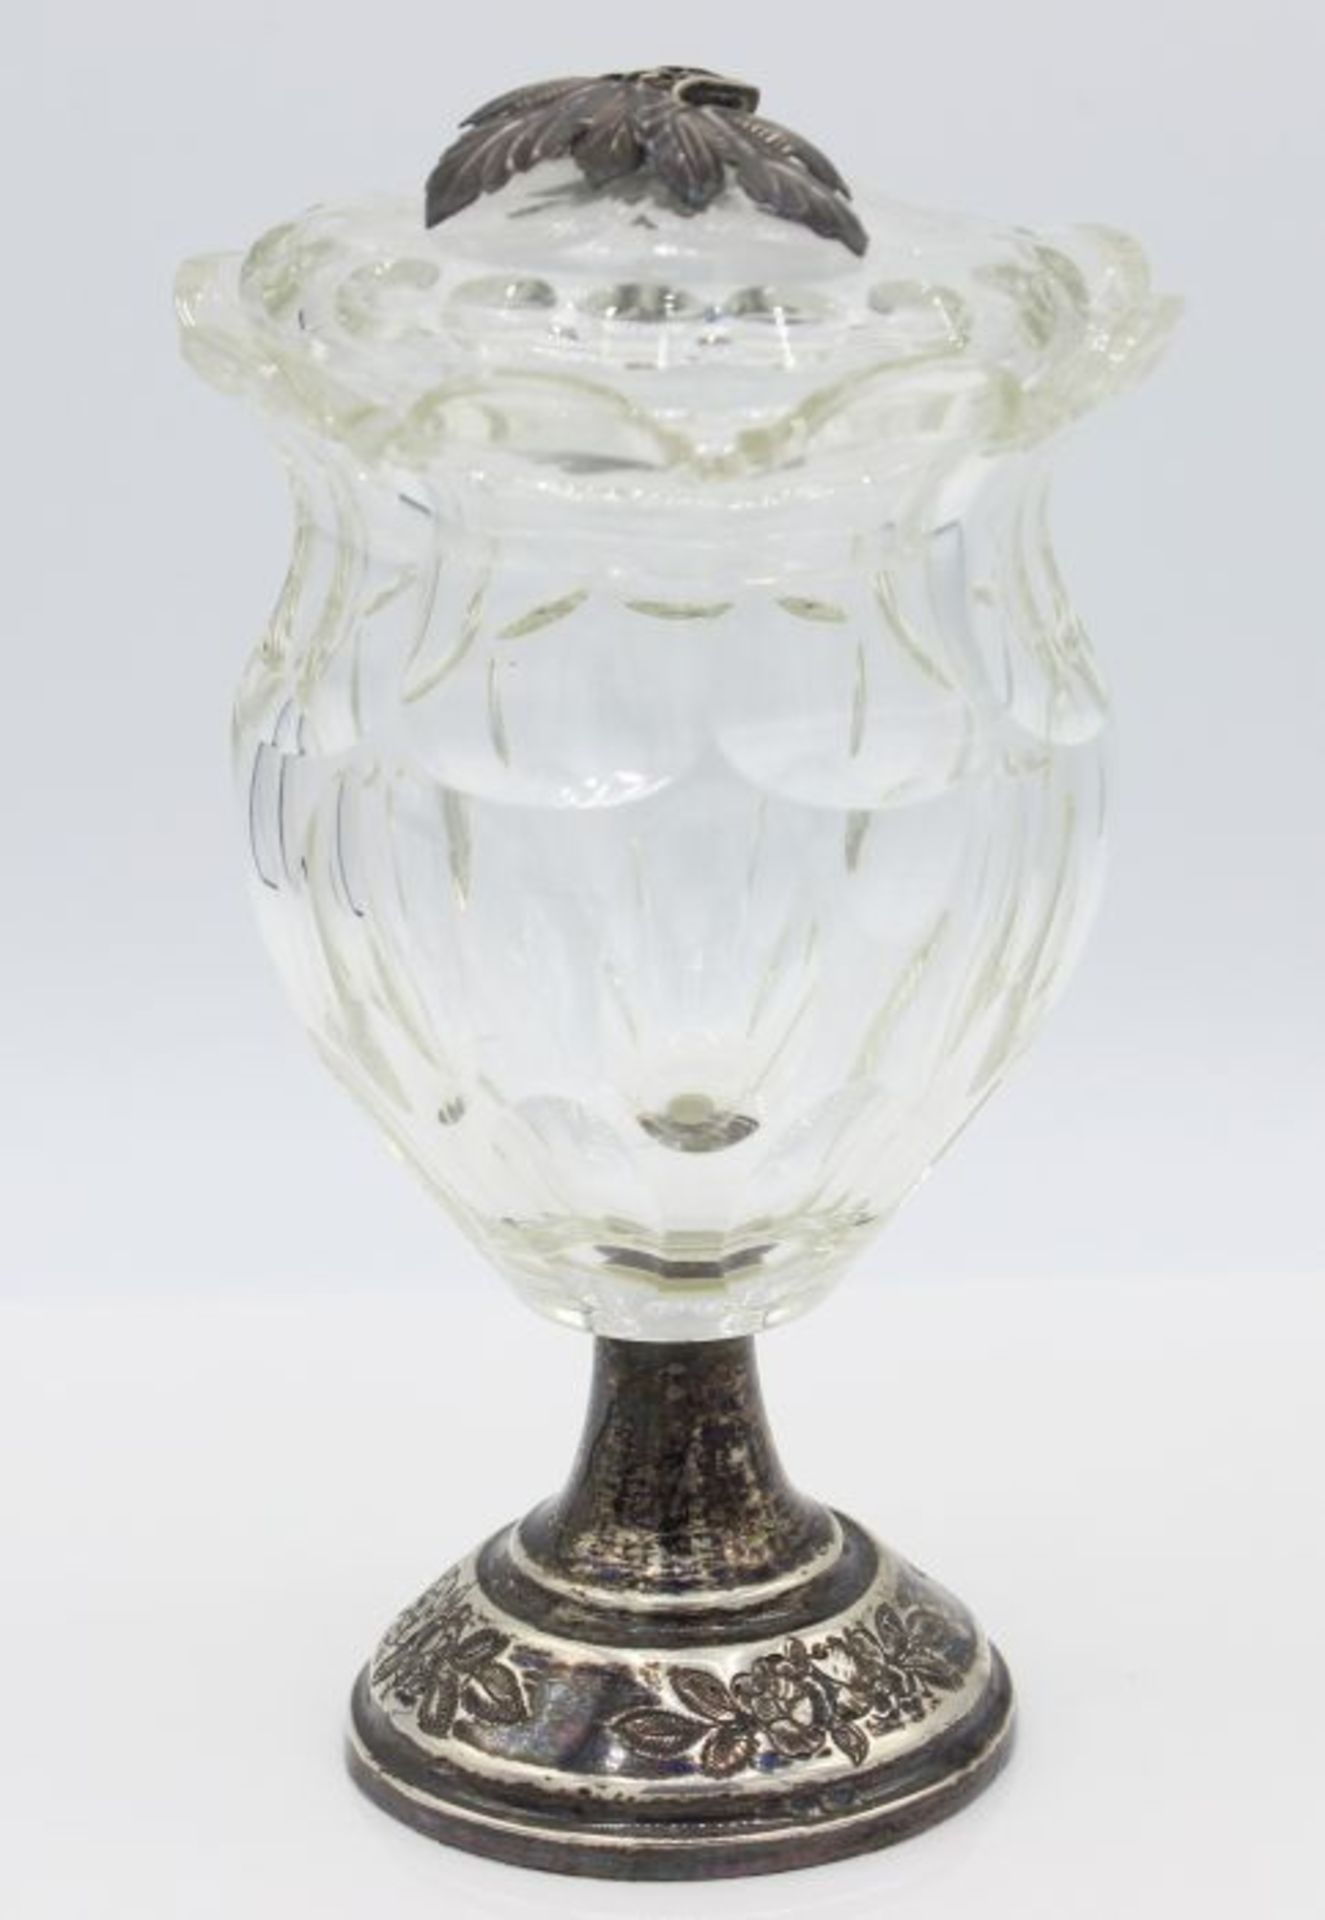 Kleiner Deckelpokal farbloses Glas mit Ovalschliff, runder getreppter, silberner Fuß mit floralem